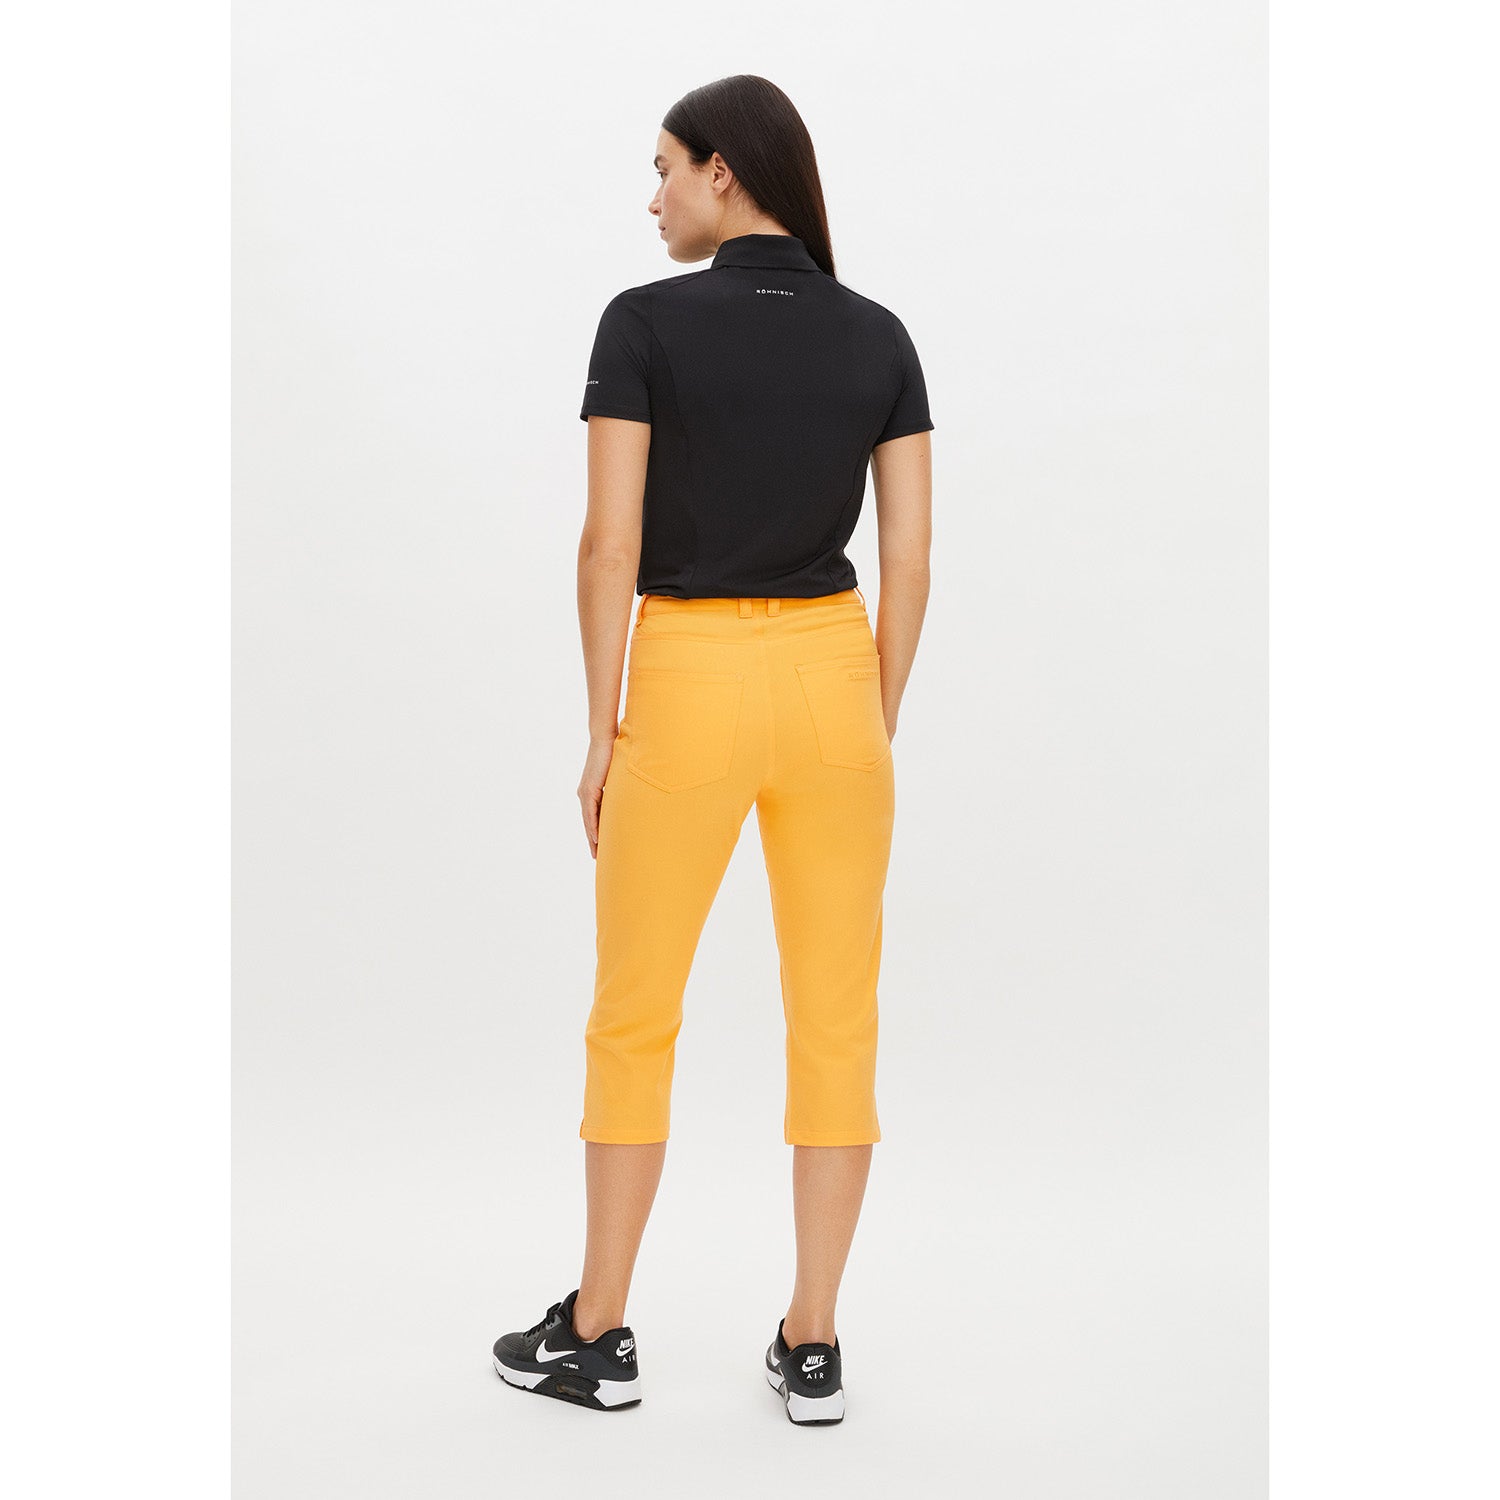 Rohnisch Ladies Chic Slim-Fit Capris in Blazing Orange – GolfGarb